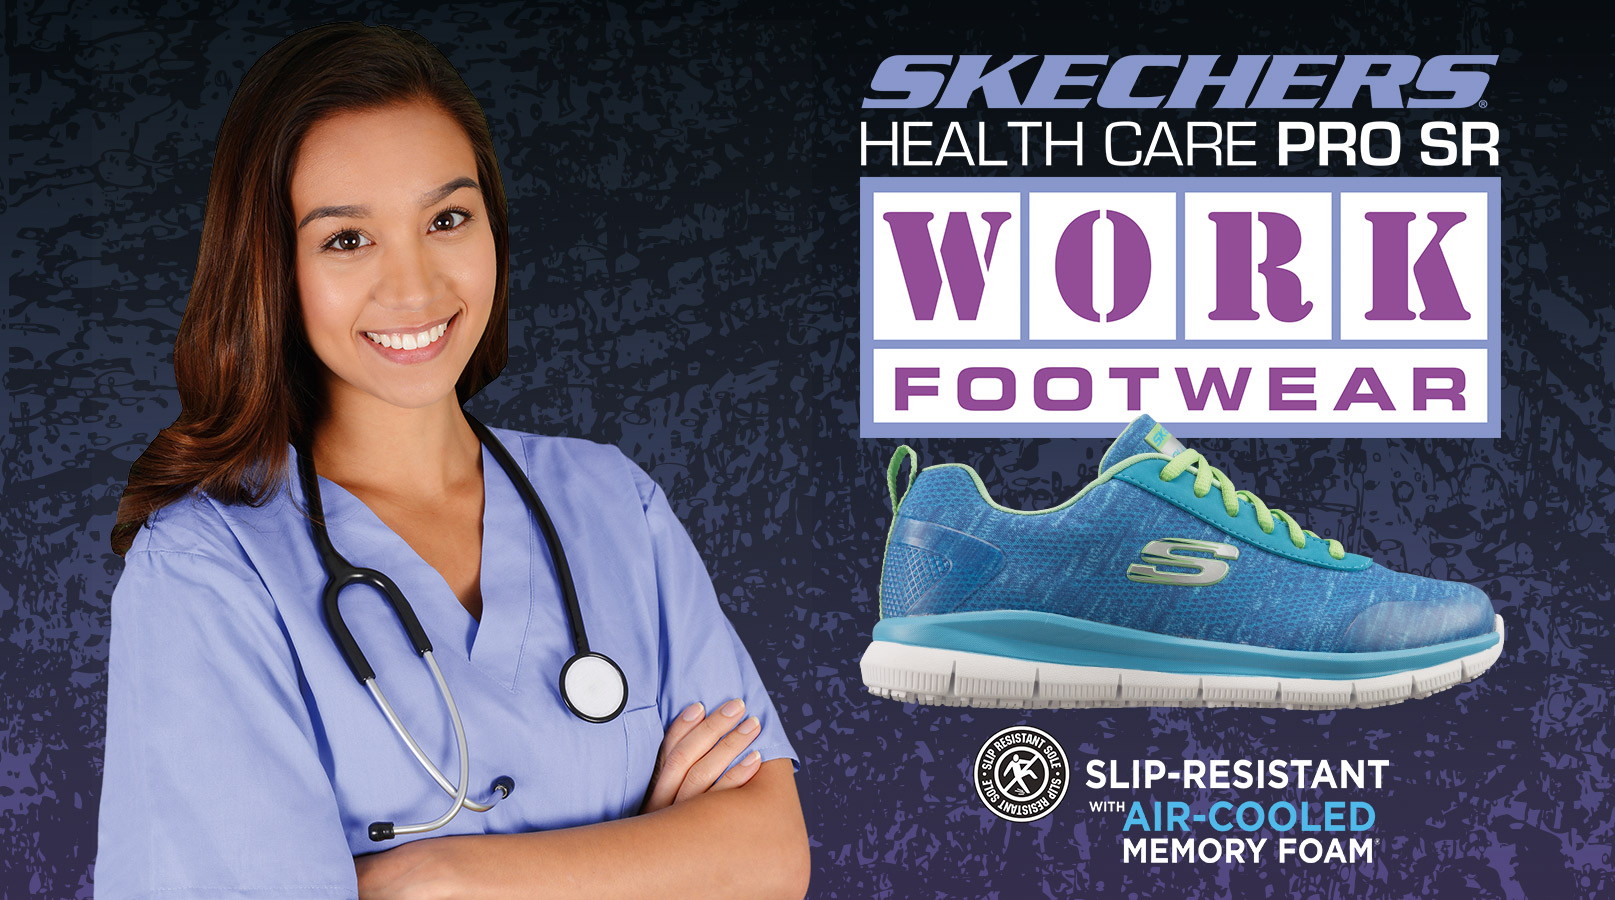 skechers workforce shoes